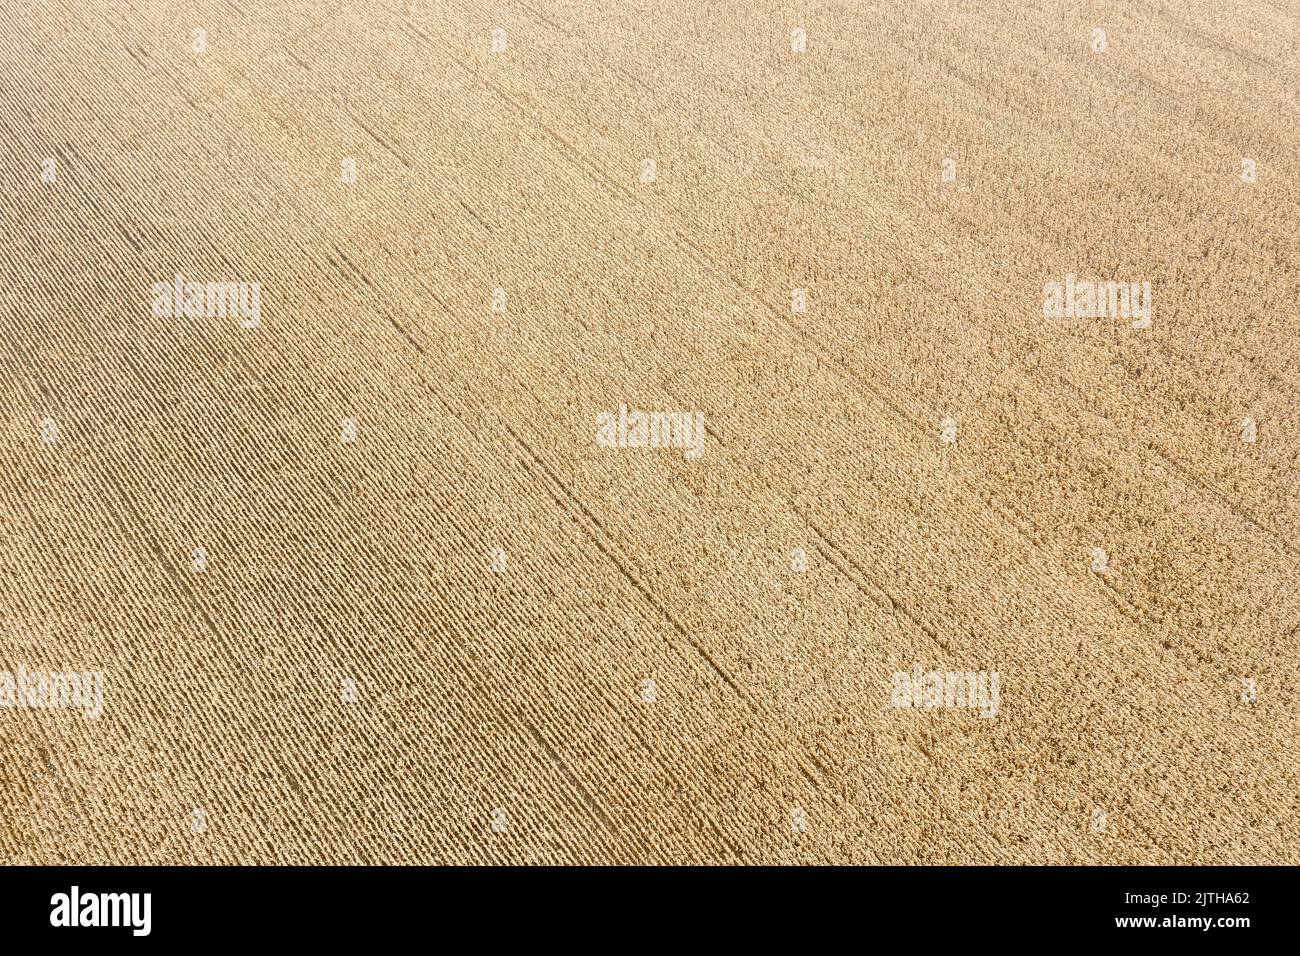 campo de trigo maduro. paisaje agrícola. vista aérea. Foto de stock